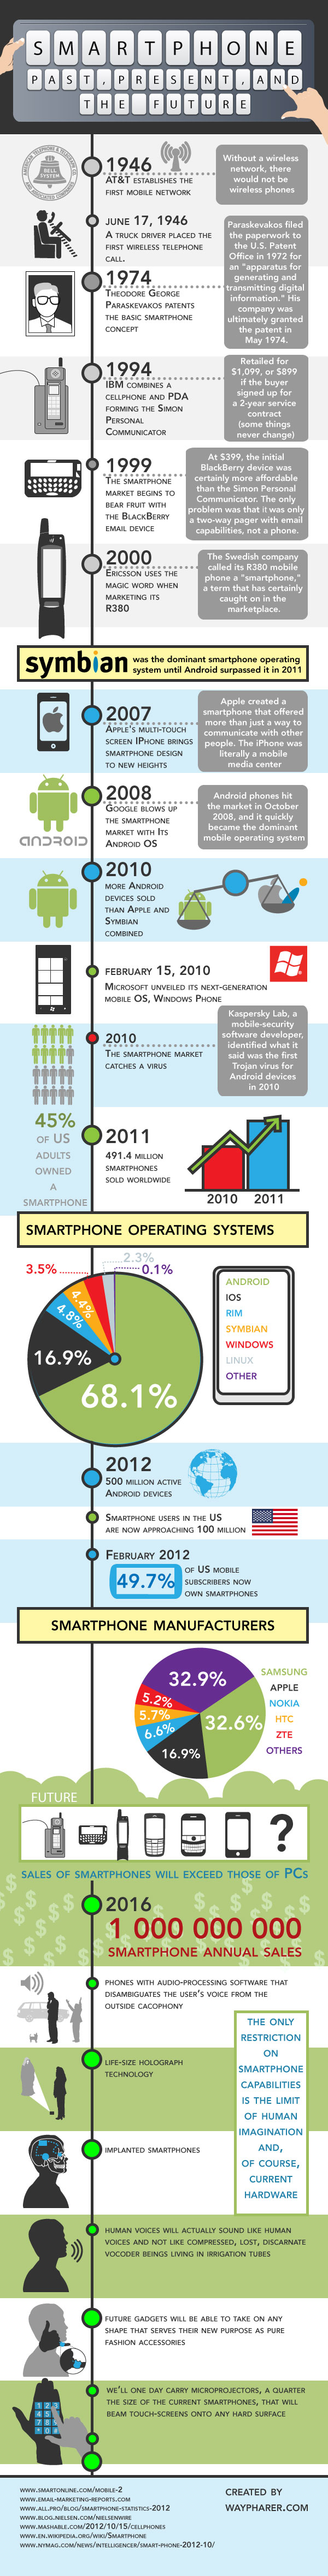 smartphones-past-future-infographic-lowres